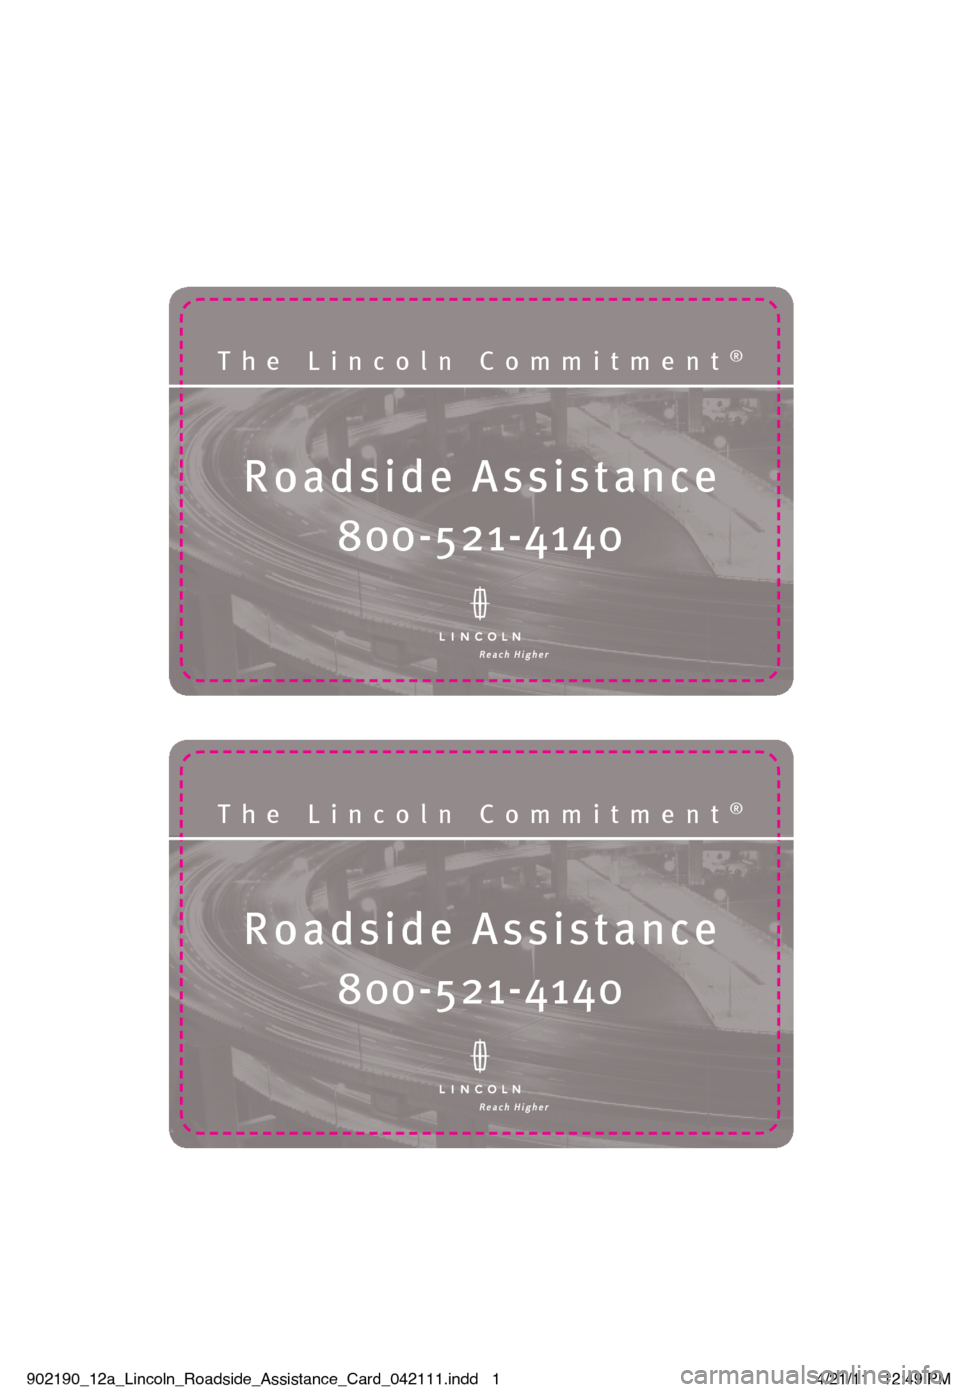 LINCOLN NAVIGATOR 2012  Roadside Assistance Card Roadside Assistanc\®e
The Lincoln Commit\®ment®
\f00-5\b1-4140
Roadside Assistanc\®e
The Lincoln Commit\®ment®
\f00-5\b1-4140
902190_12a_Lincoln_Roadside_Assistance_Card_042111.indd   14/21/11  